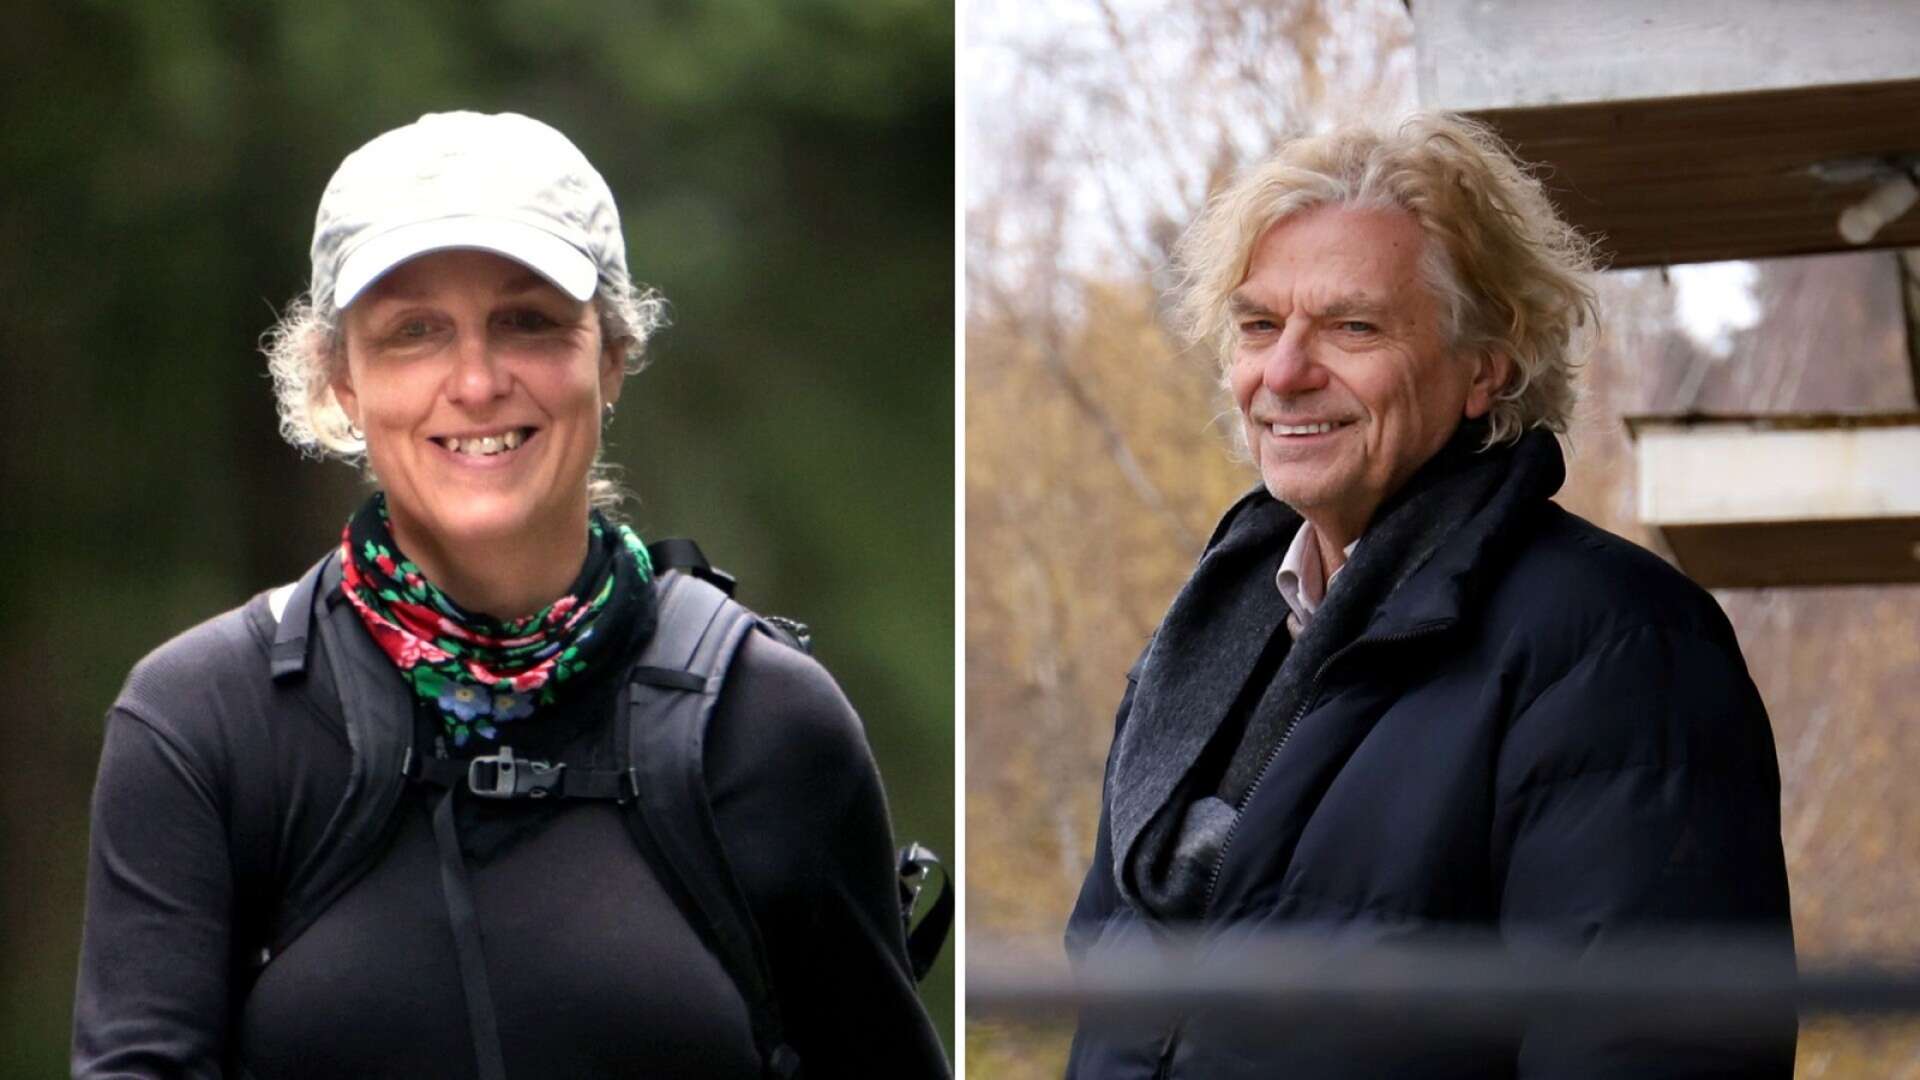 Marit Kapla och Jan Jörnmark utforskar var och en på sitt vis livet och människors villkor i Värmland